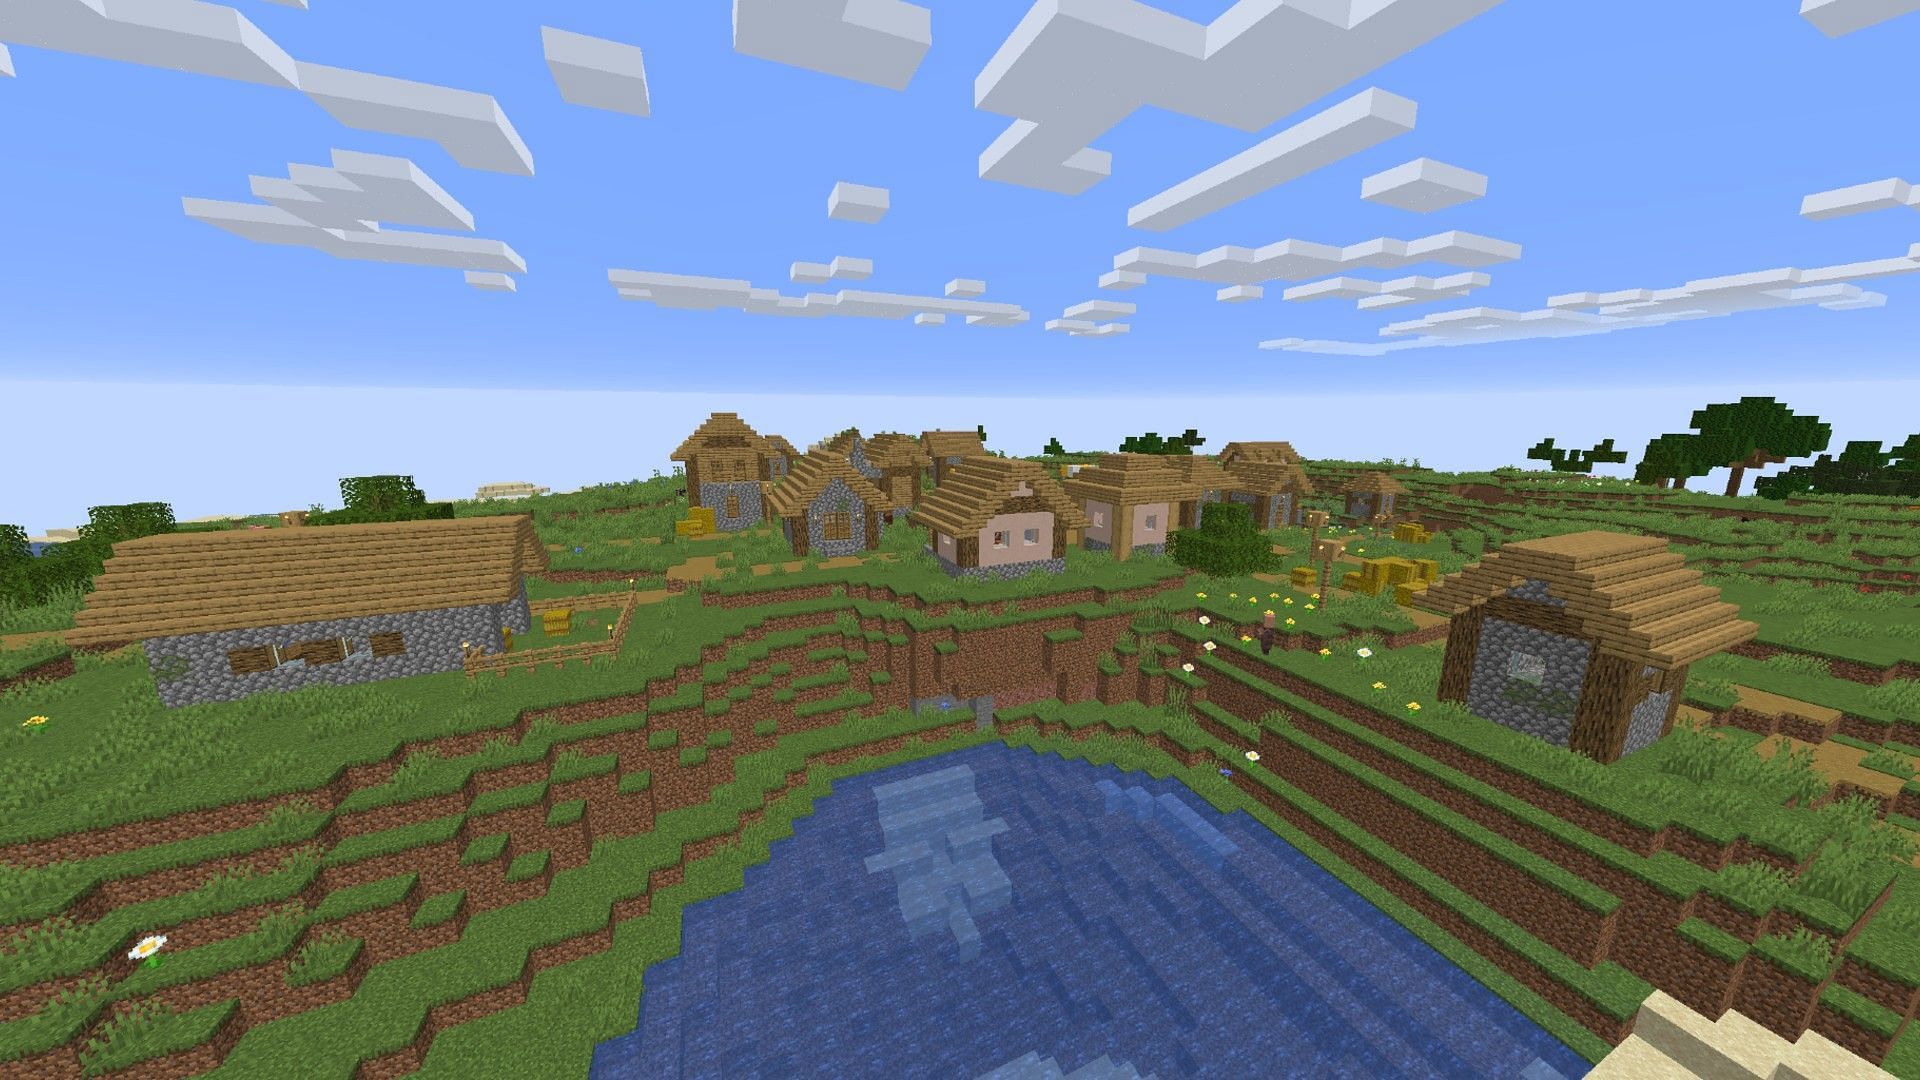 Village in Minecraft (Image via Minecraft)